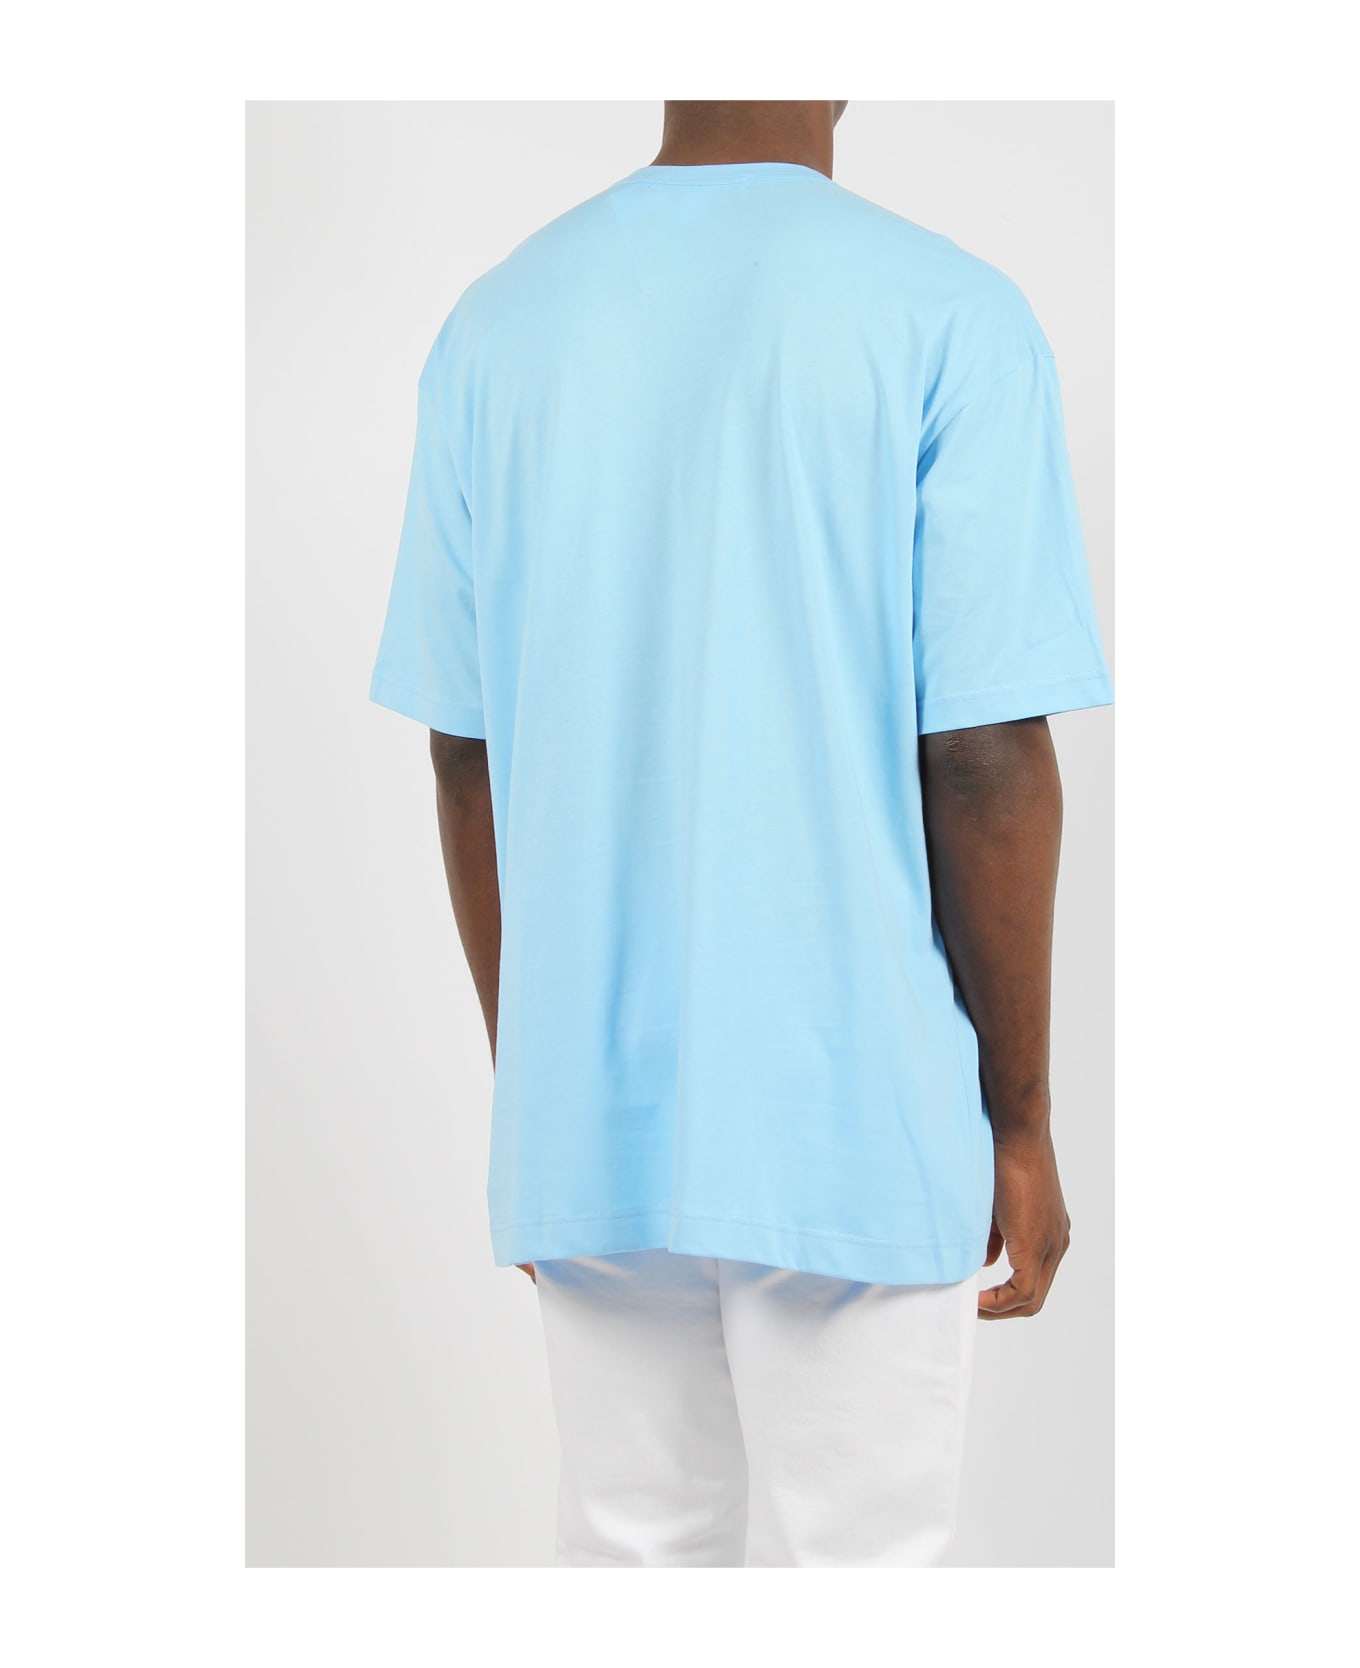 Comme des Garçons Shirt Jersey Cotton Basic T-shirt - Blue